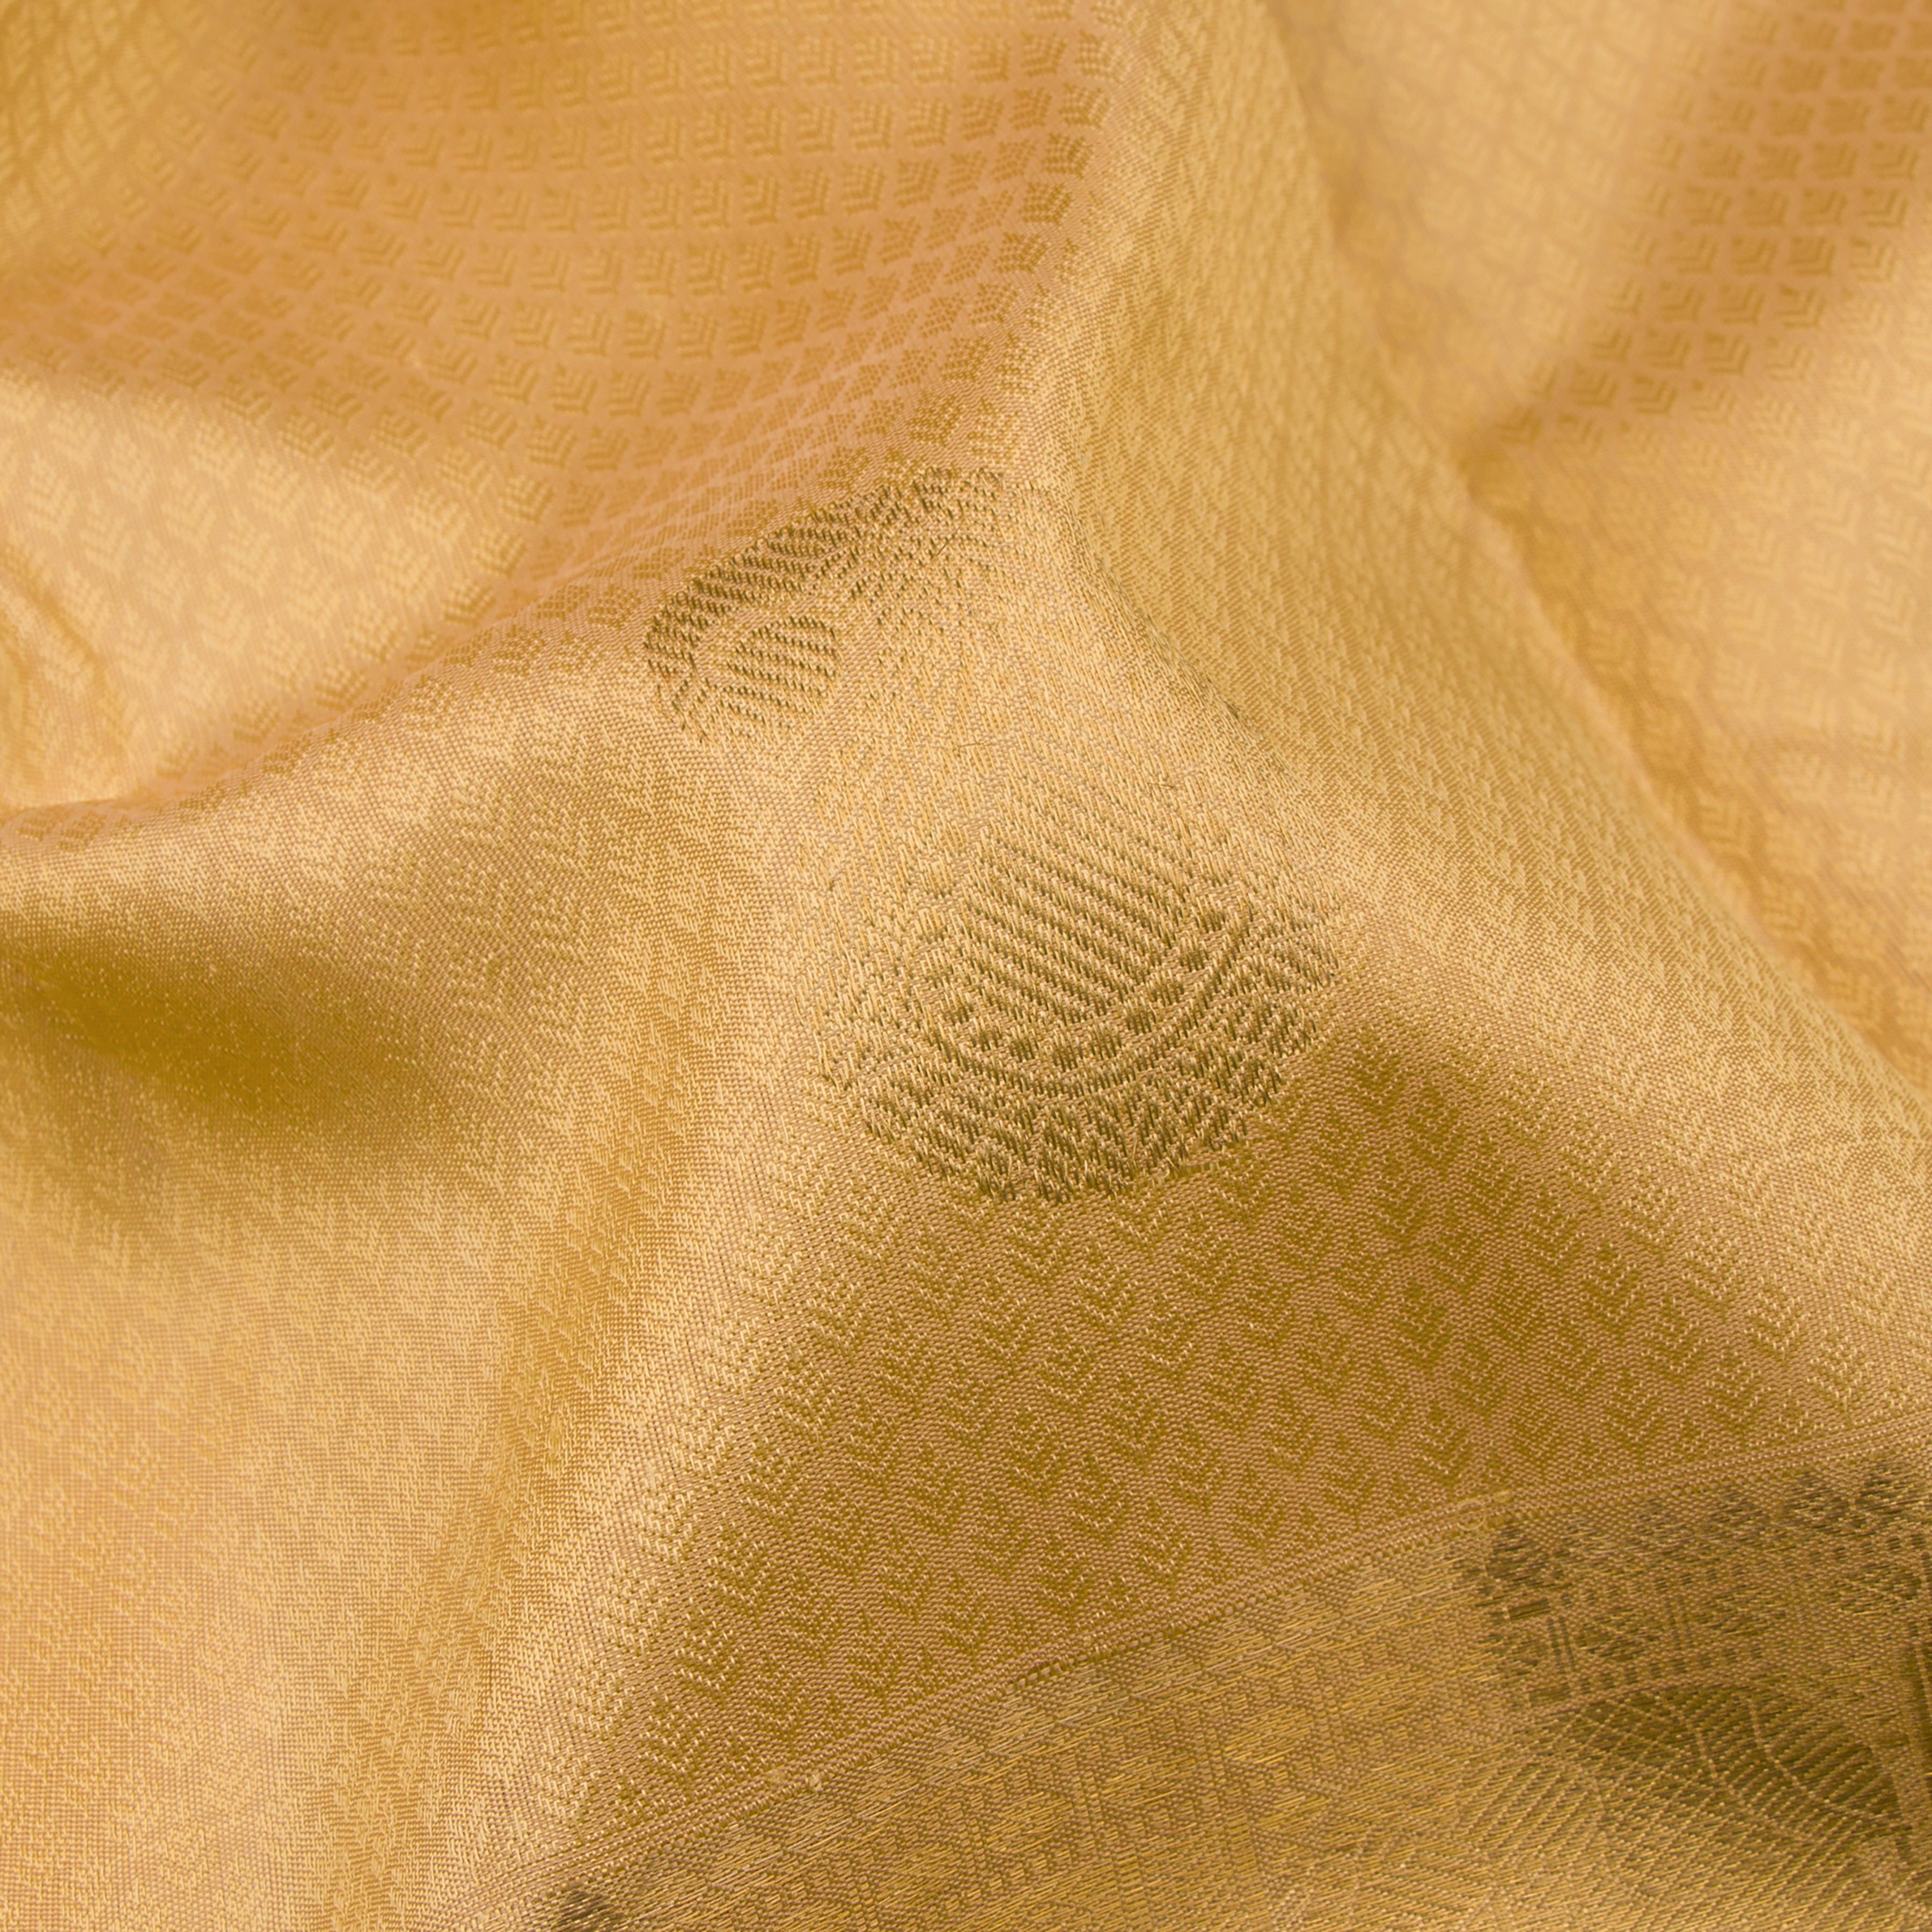 Kanakavalli Kanjivaram Silk Sari 22-599-HS001-05866 - Fabric View